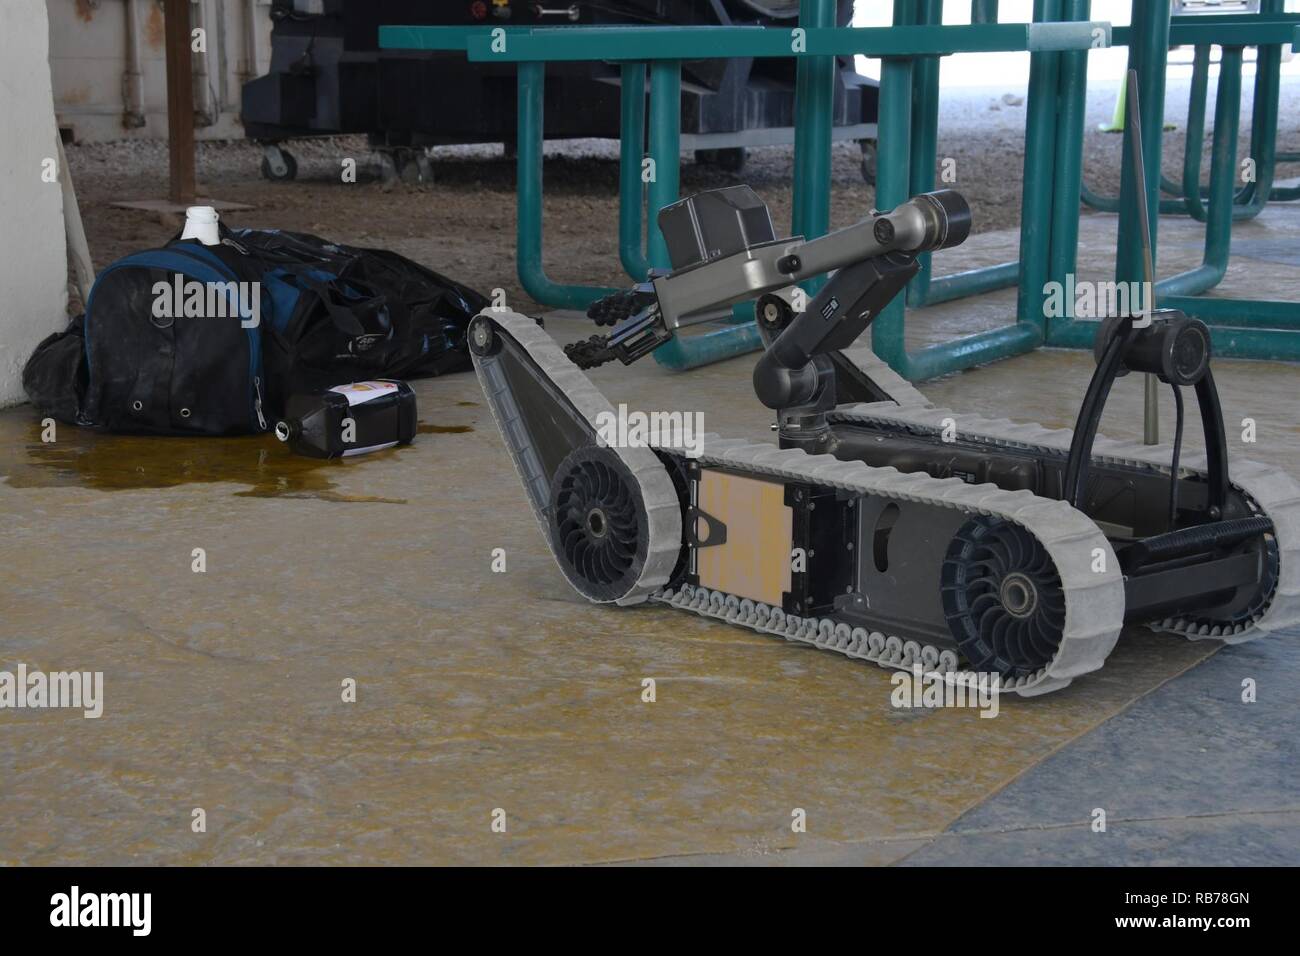 Eine Pacbot 310 Bombenentschärfung Roboter, die zu den 379 Expeditionary Bauingenieur Squadron die Beseitigung von Explosivstoffen Flug liefert live Video Aufnahmen von einem möglichen Improvised Explosive Device während einer Übung im Al Udeid Air Base, Katar, Dez. 14, 2016. Die Pacbot310 ist ein Asset, leicht zu transportieren, können in einen Rucksack gepackt werden und ist in der Lage, eine Live Video feed für EOD-Techniker, um fundierte Entscheidungen in Bezug auf explosive ordnances zur Verfügung zu stellen. Stockfoto